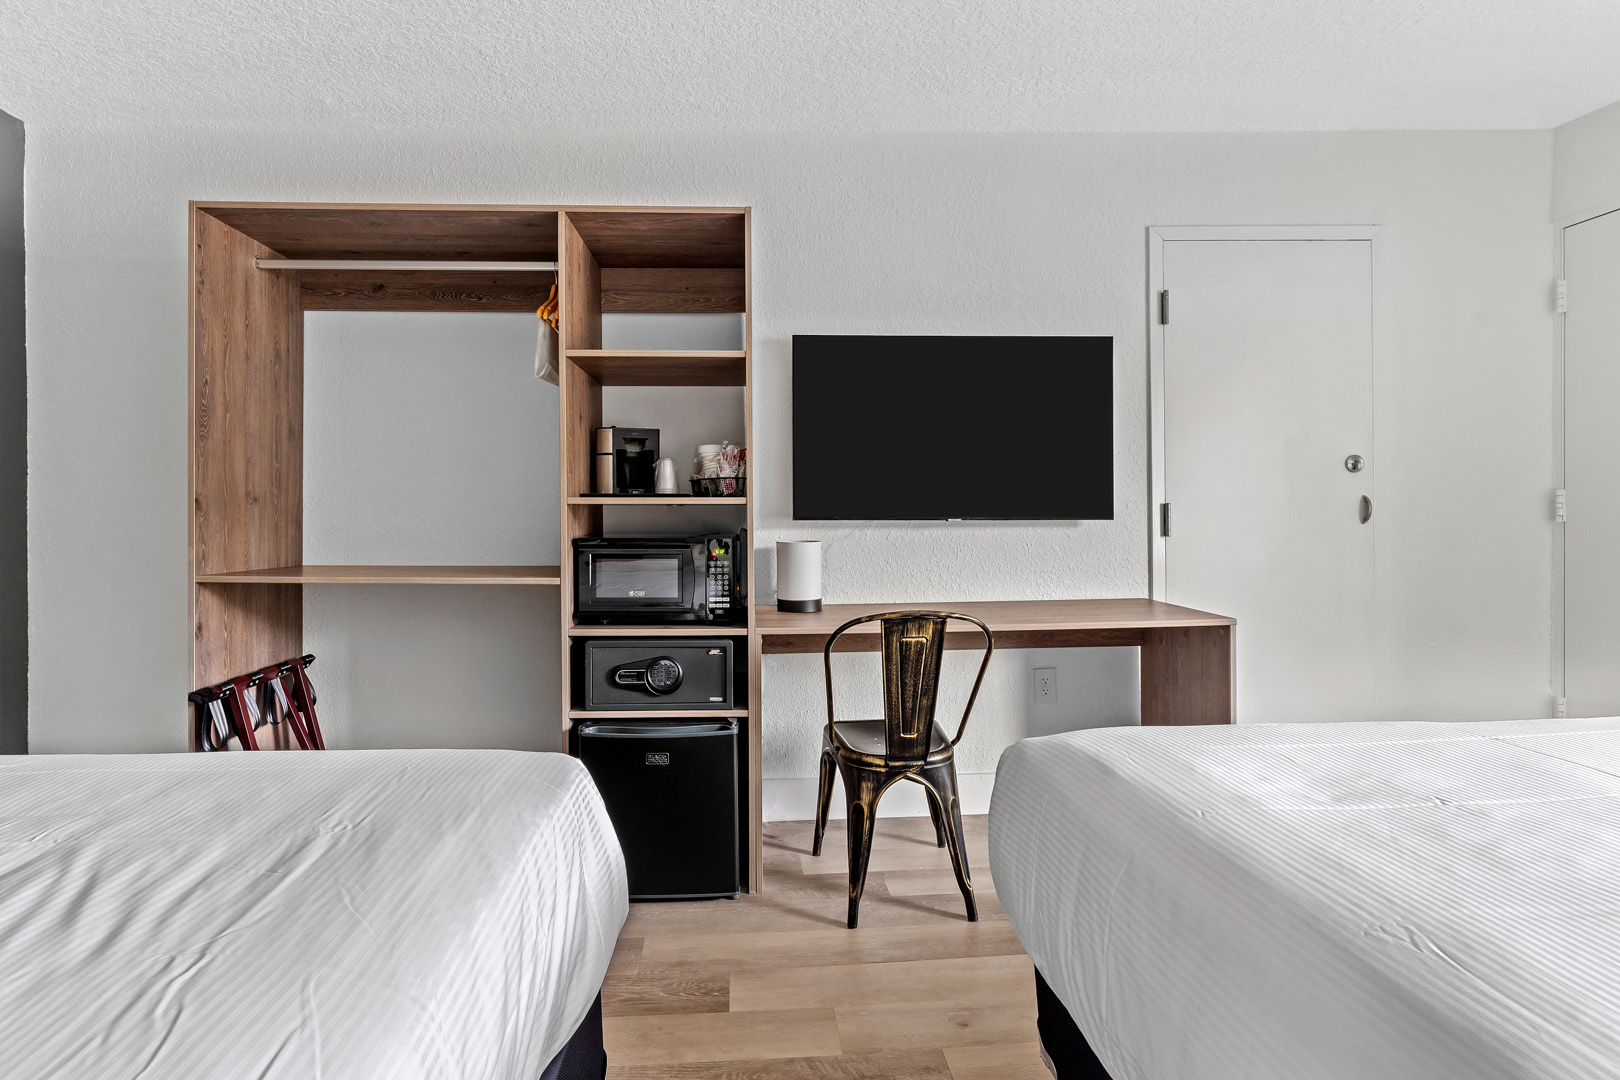 Dos camas dobles, mueble de pared con microondas, caja de seguridad y mininevera junto a TV montada y escritorio